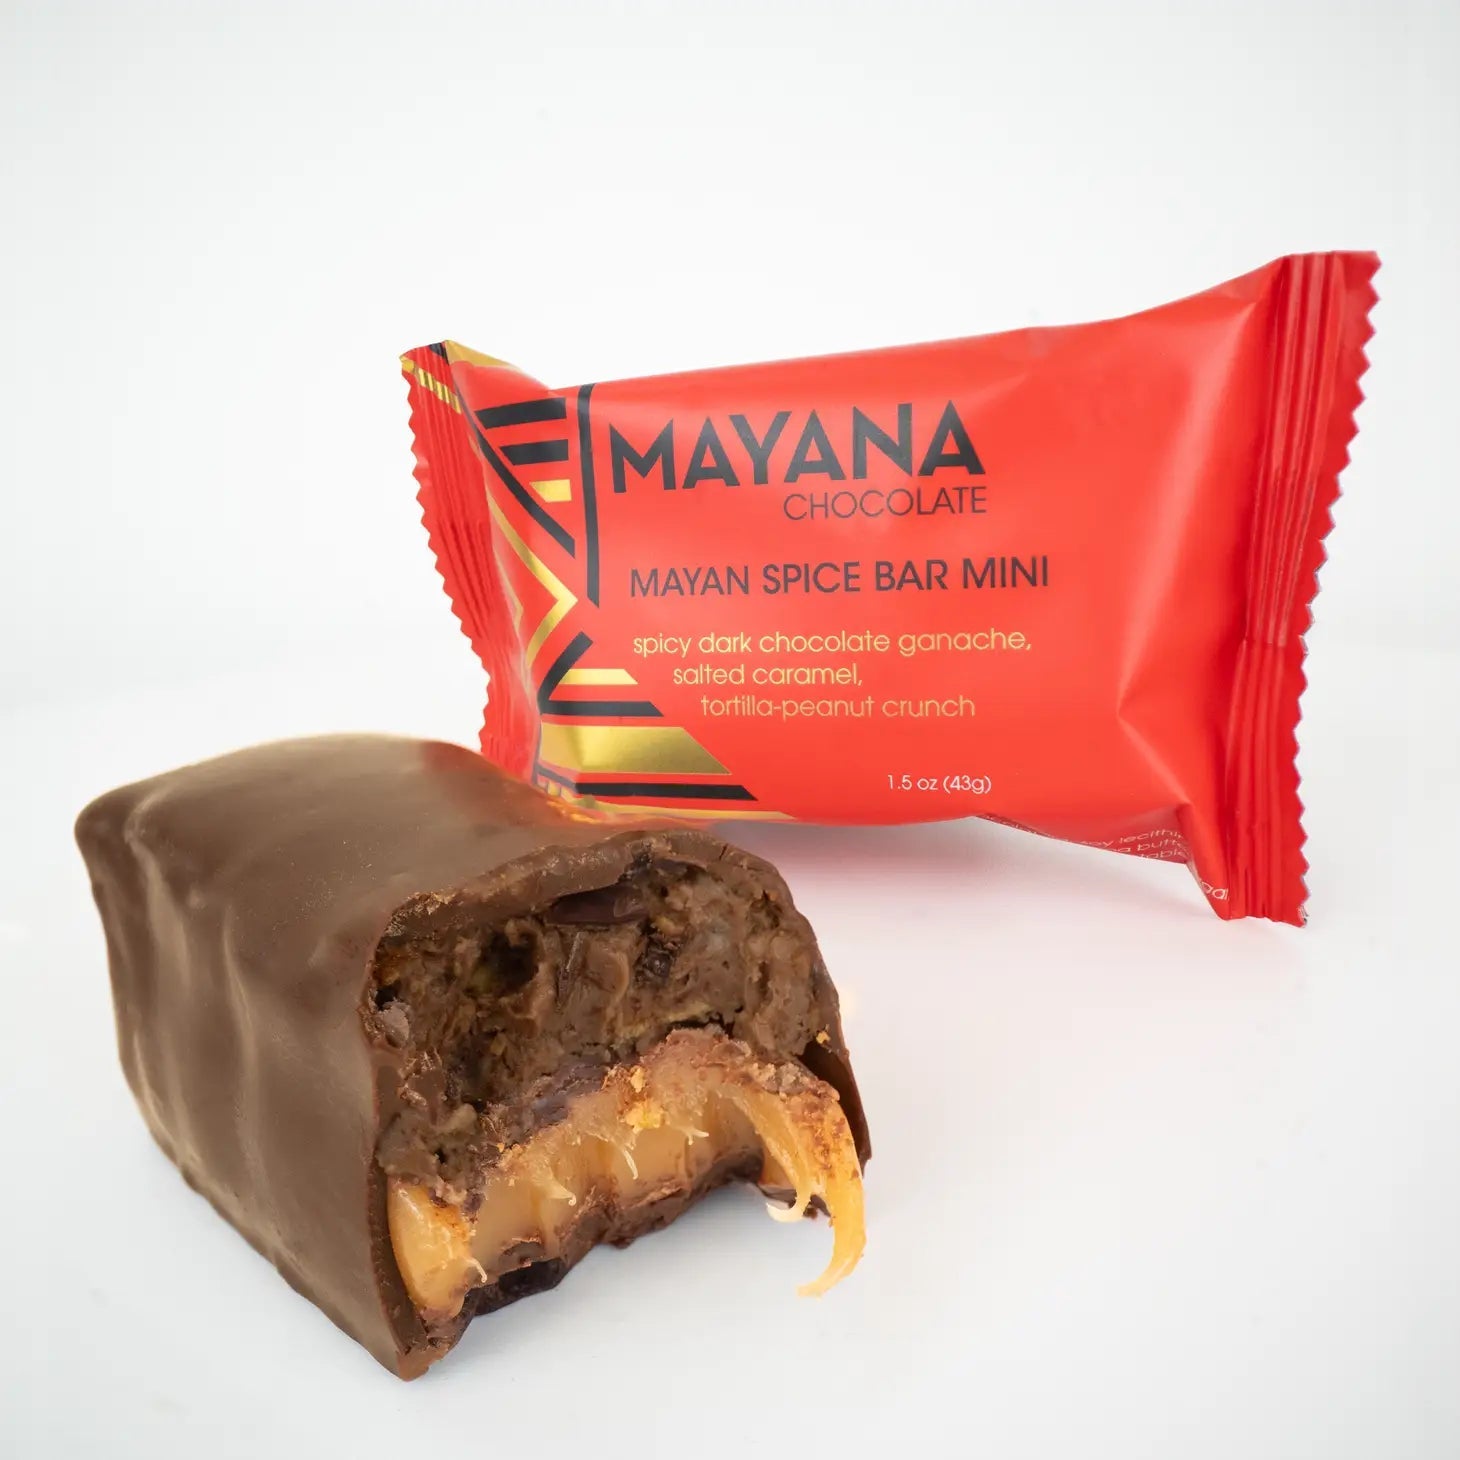 Mayana Chocolate Bars Mayan Spice Bar Mini - BKLYN Larder